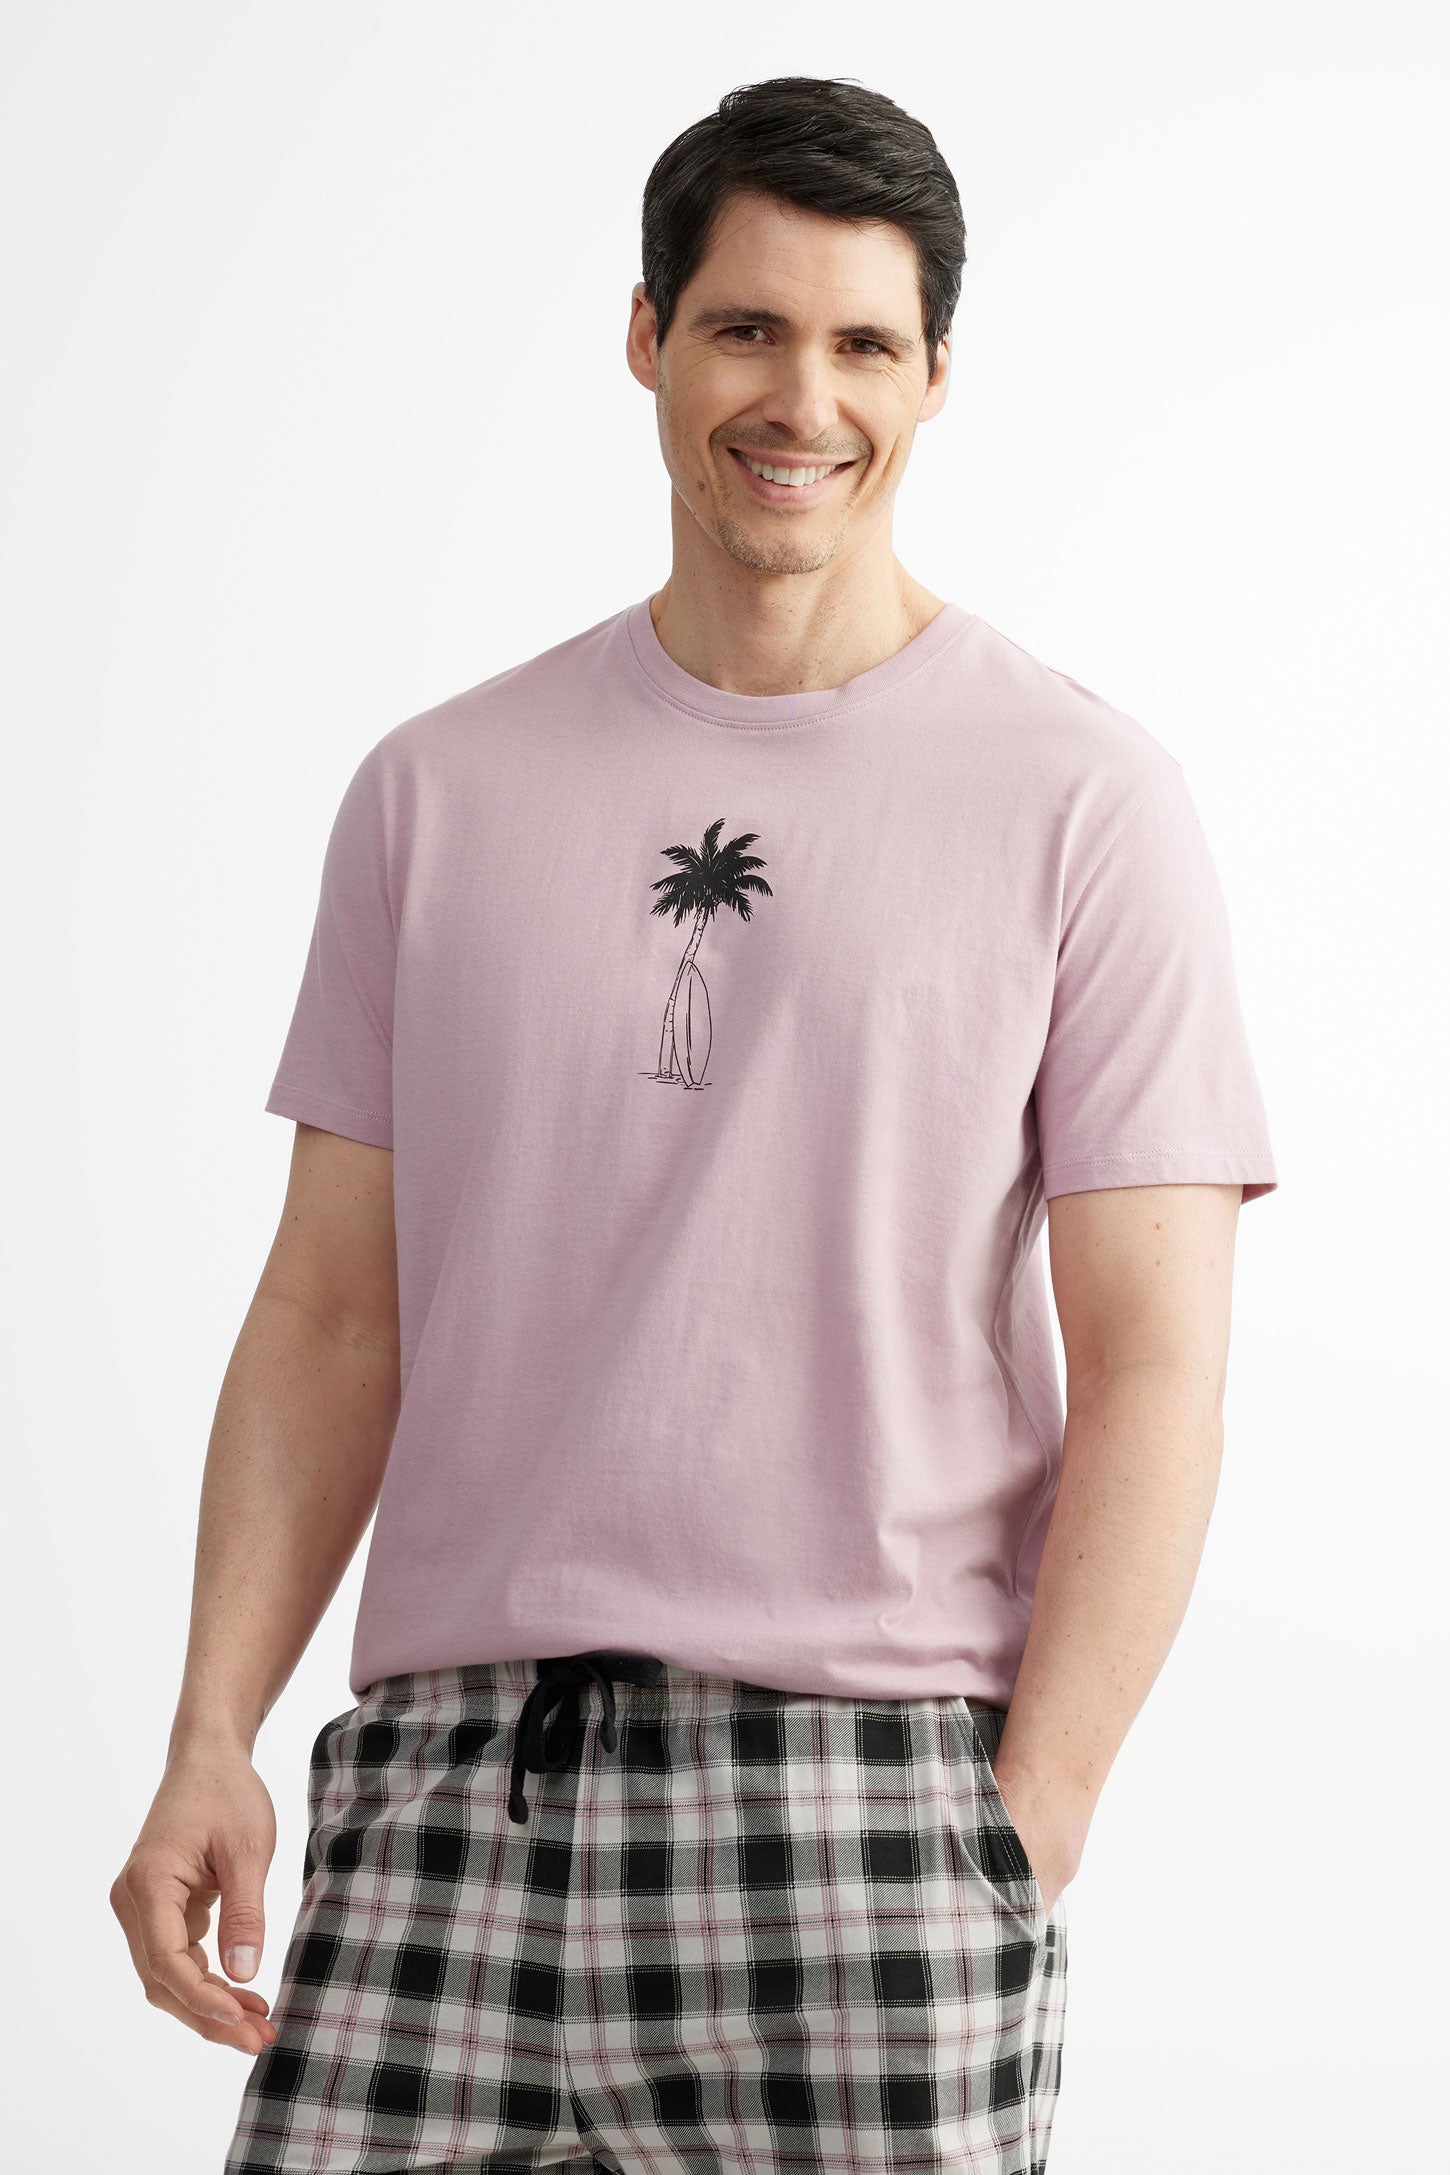 T-shirt pyjama en coton, 2/40$ - Homme && MAUVE